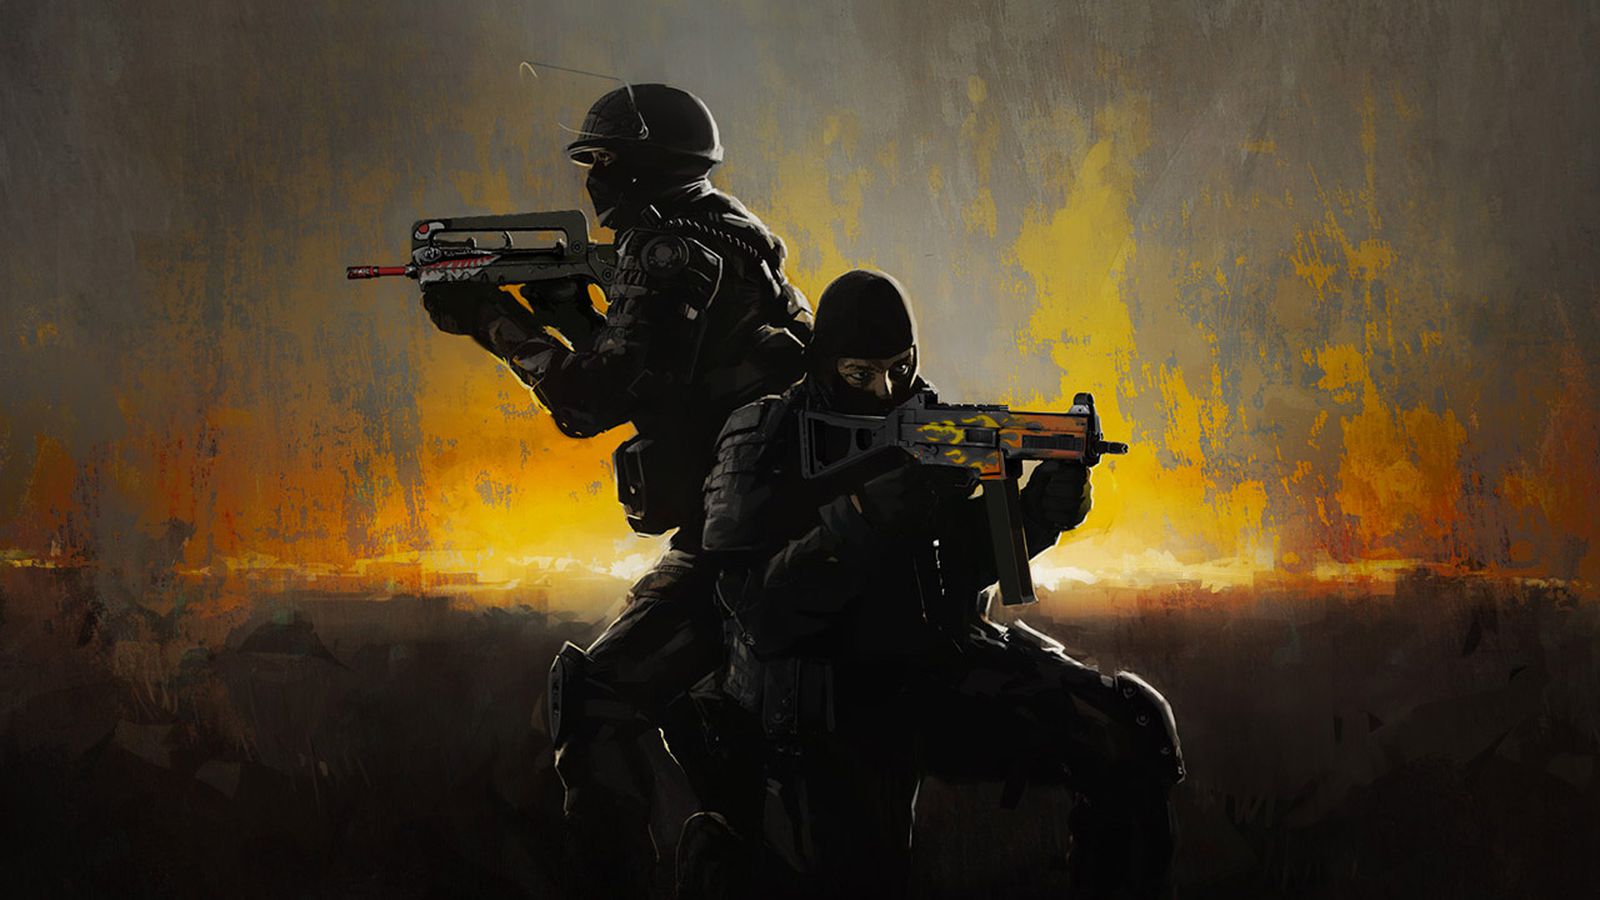 Counter-Strike 2 es una realidad: Valve publica videos con gameplay y  anuncia prueba limitada desde hoy